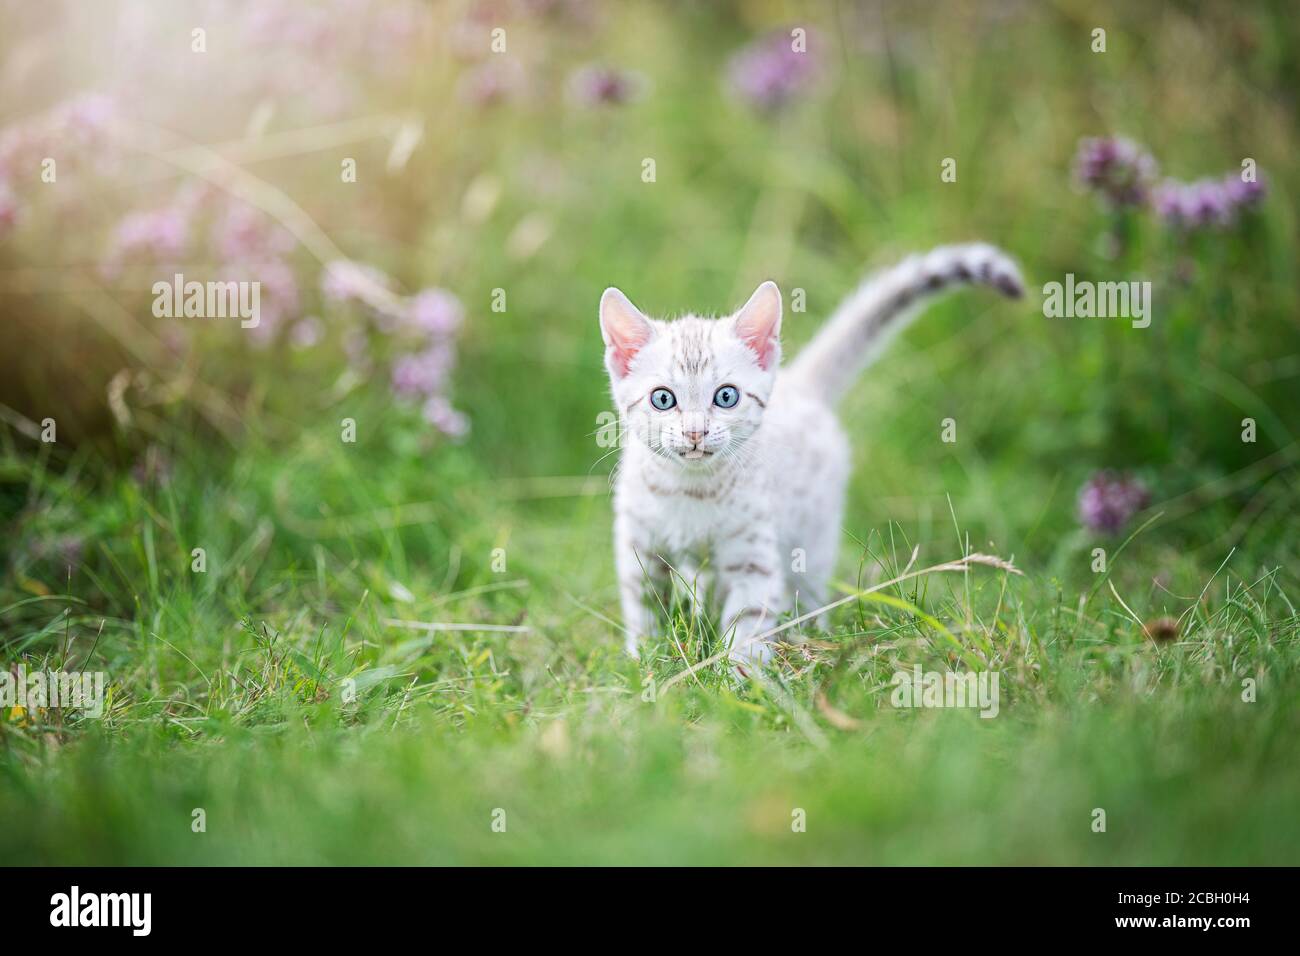 Un carino gattino bianco del Bengala all'aperto nell'erba. Il piccolo gatto curioso ha 7 settimane, e sta guardando nella macchina fotografica, gli occhi al viewe Foto Stock